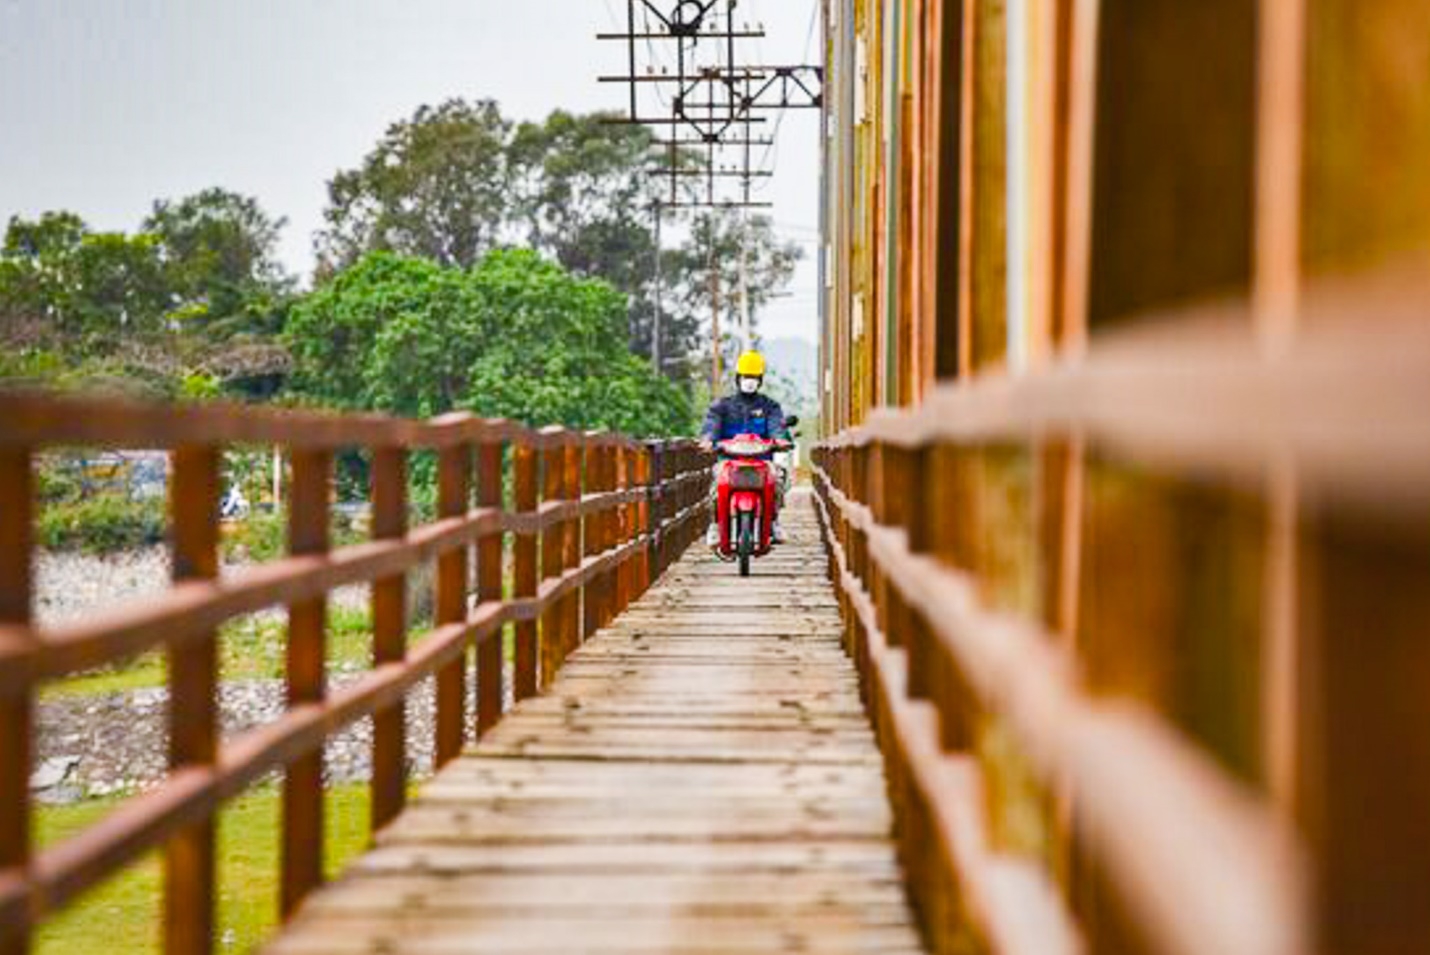 Cận cảnh cây cầu “độc nhất vô nhị” sắp được đầu tư tại Bắc Giang